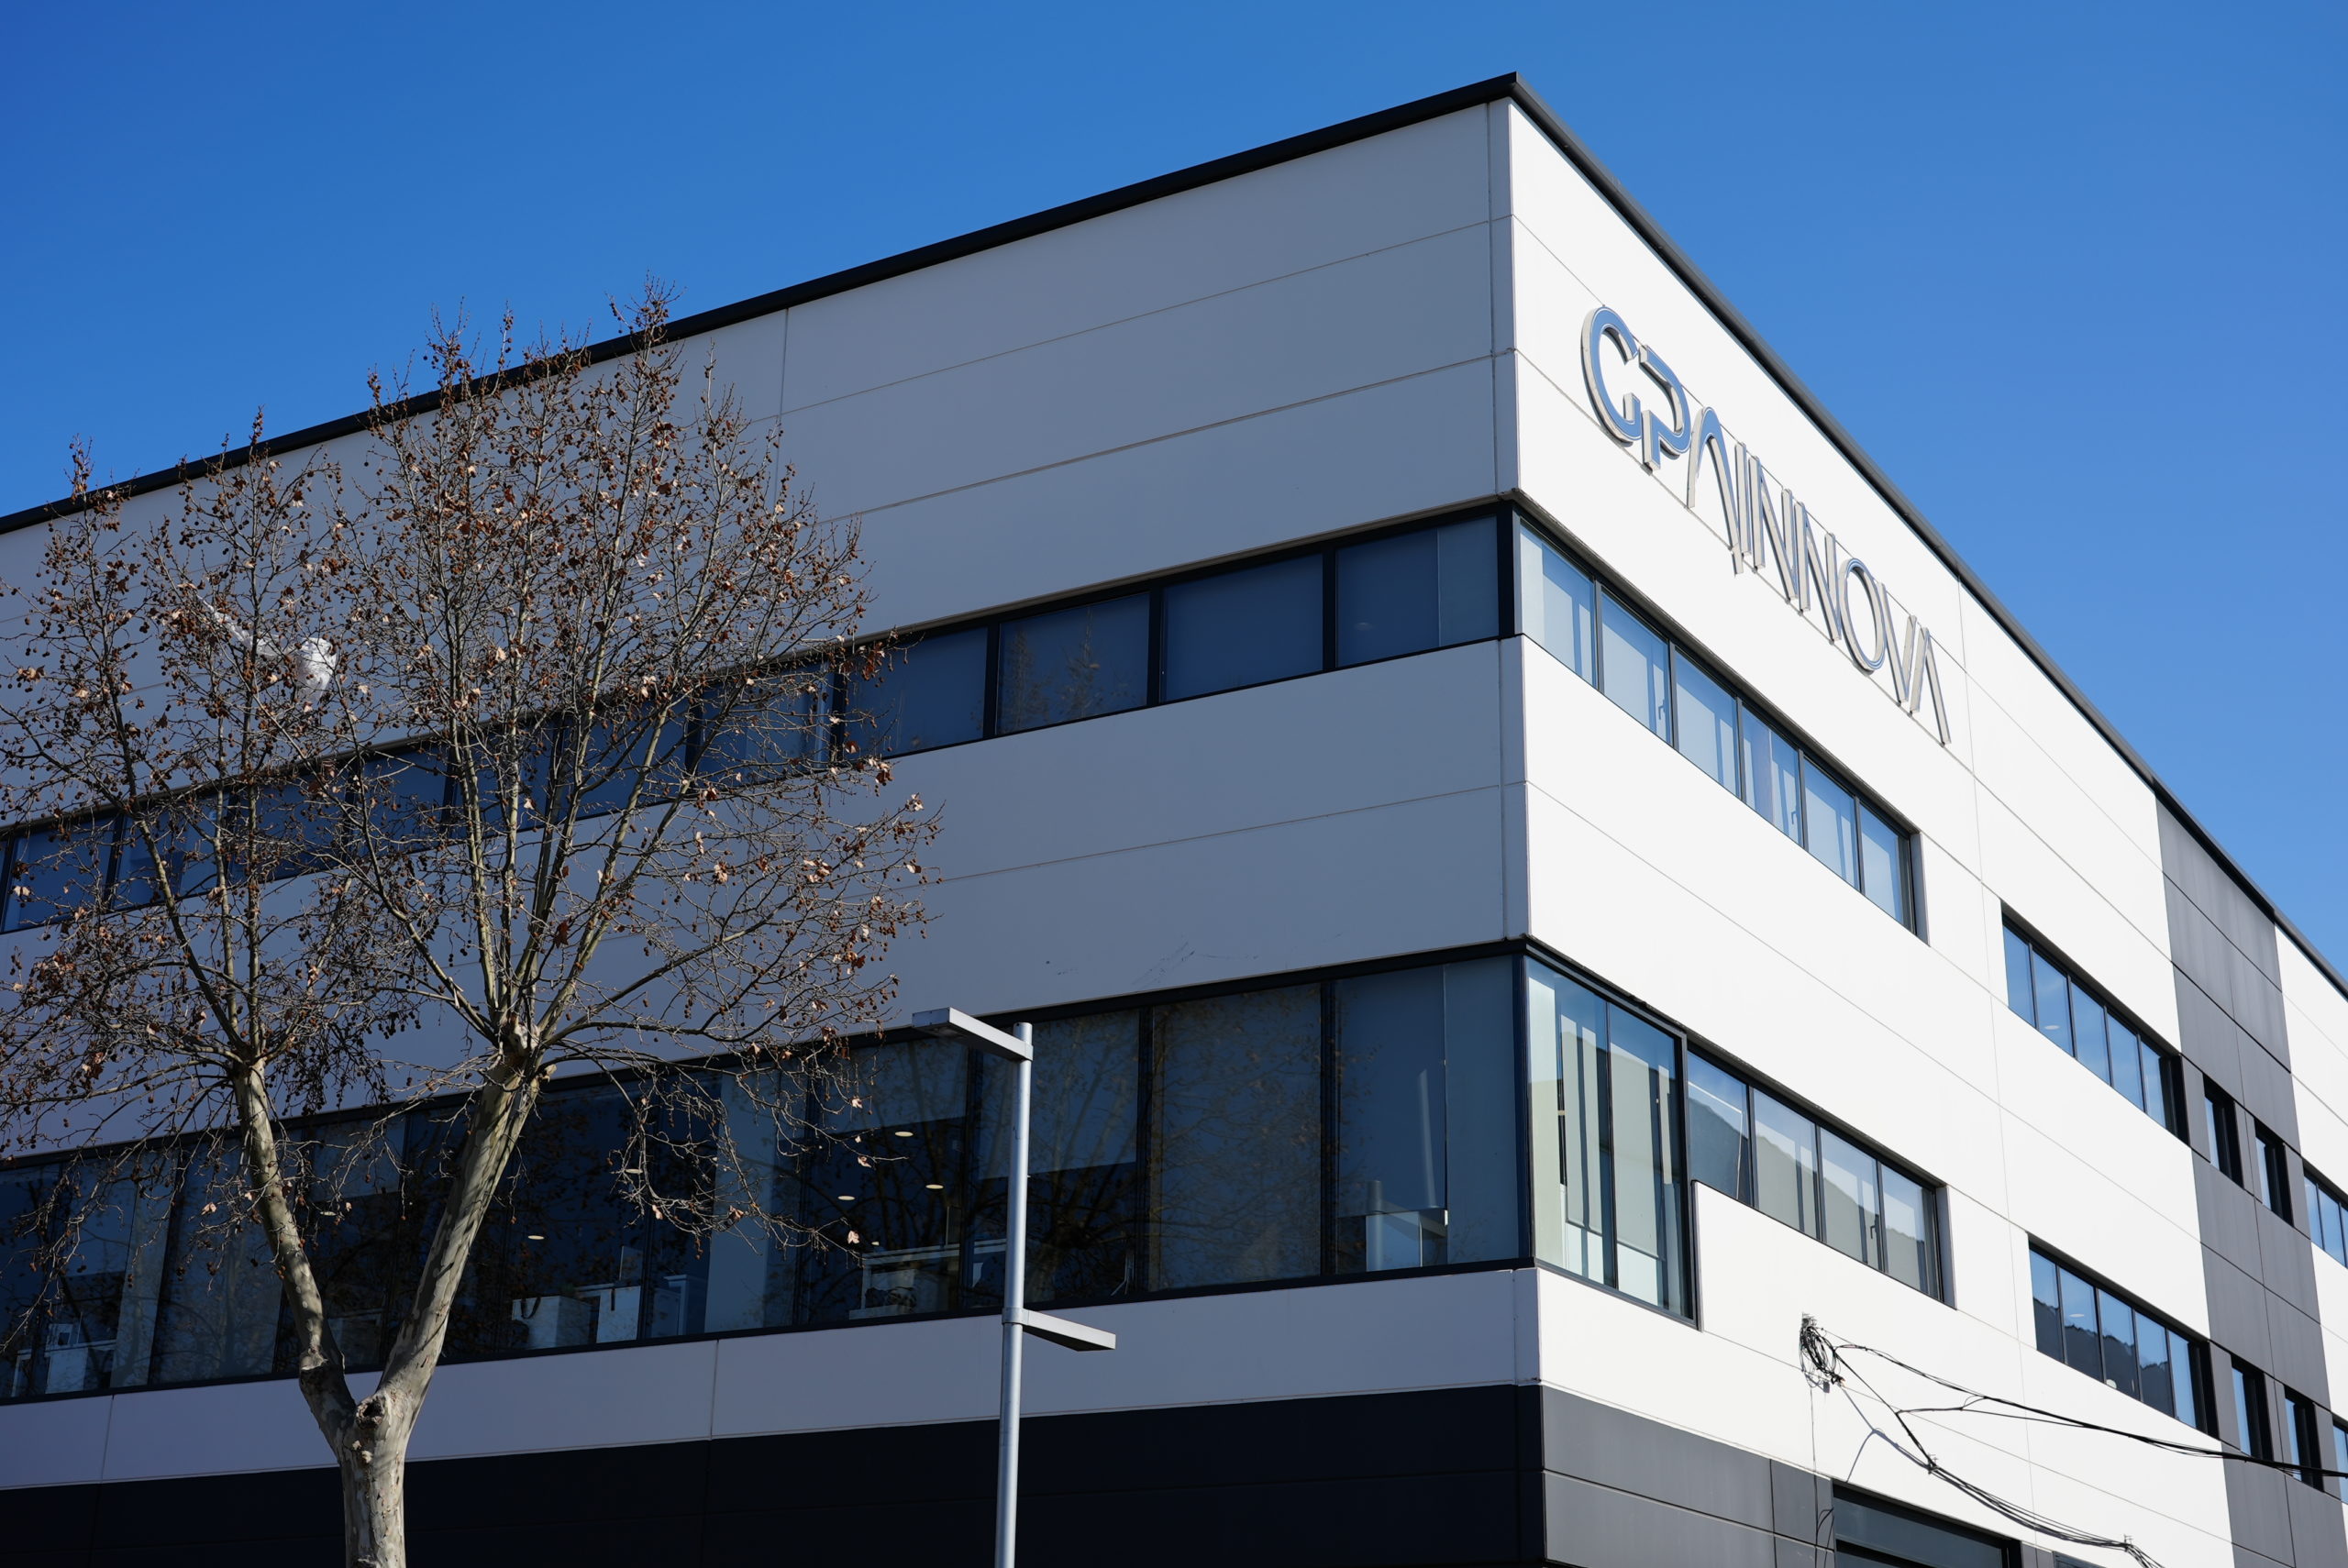 GPAINNOVA és la tercera empresa catalana que més creix, segons Financial Times